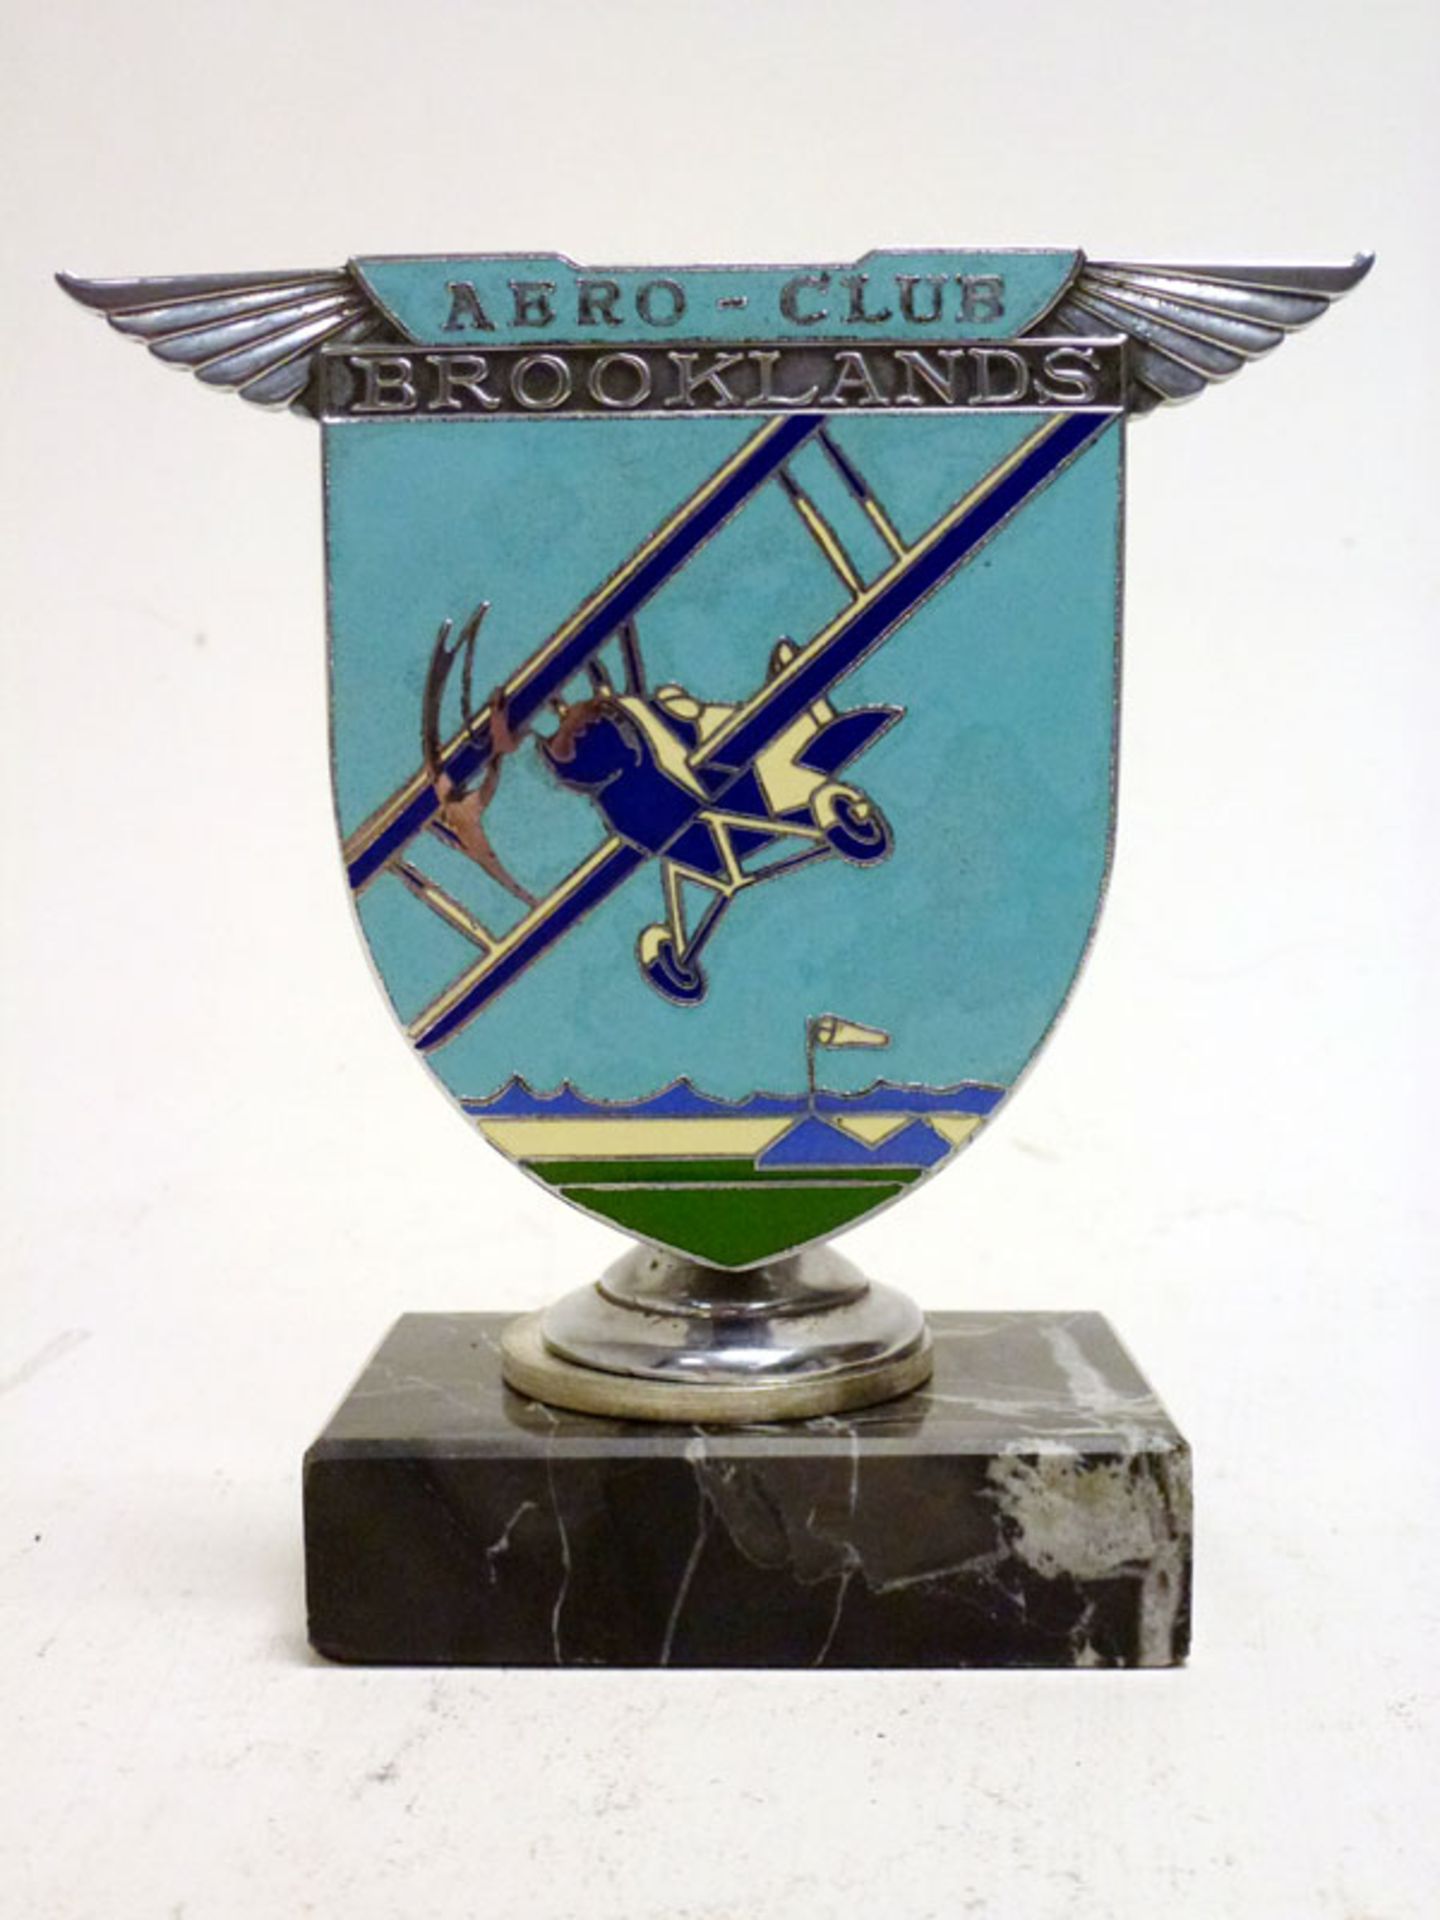 A Brooklands 'Aero-Club' Enamel Car Badge